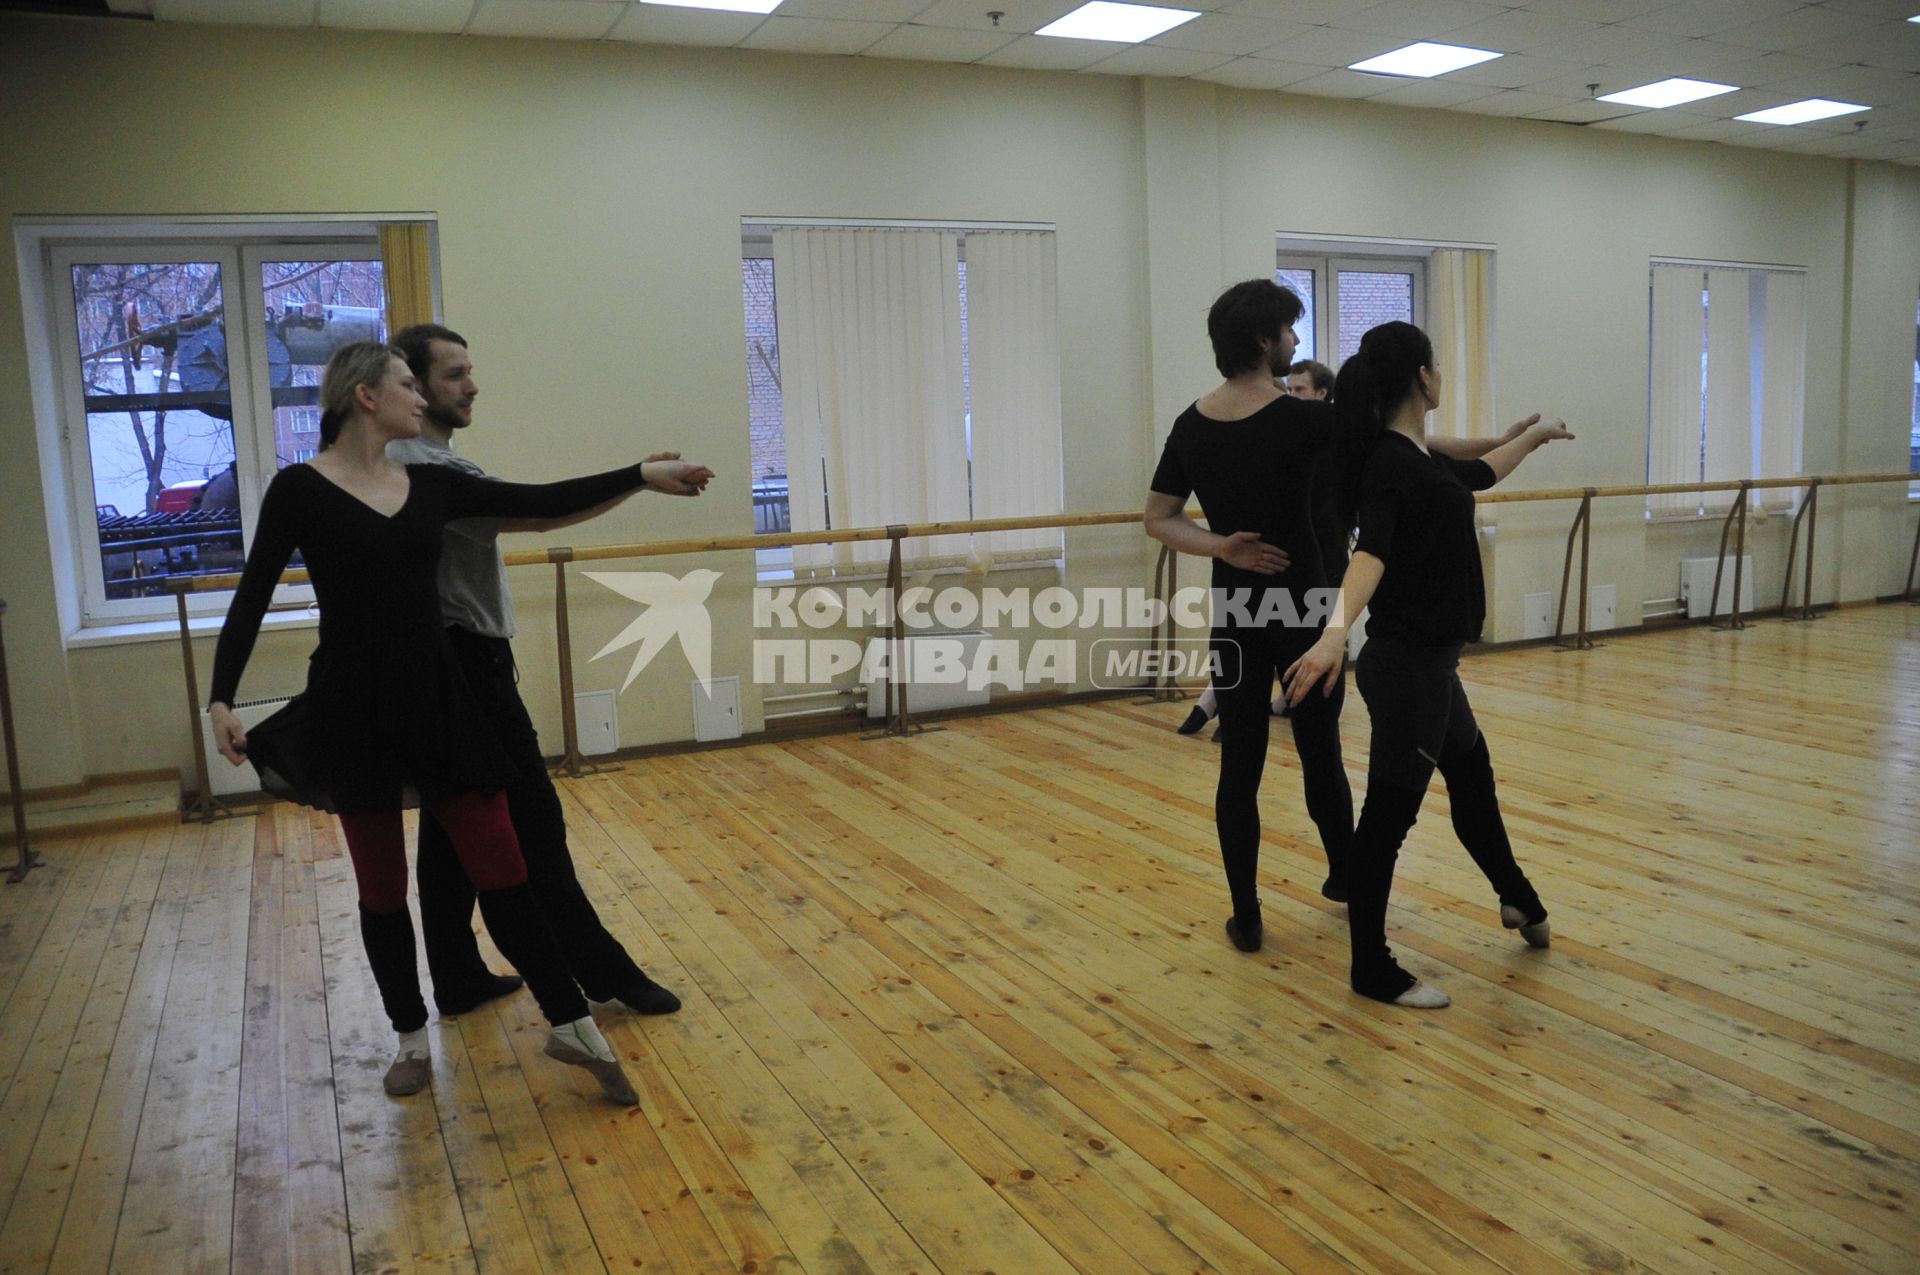 ВГИК  им. С.А. Герасимова. На снимке: студенты в танцклассе.